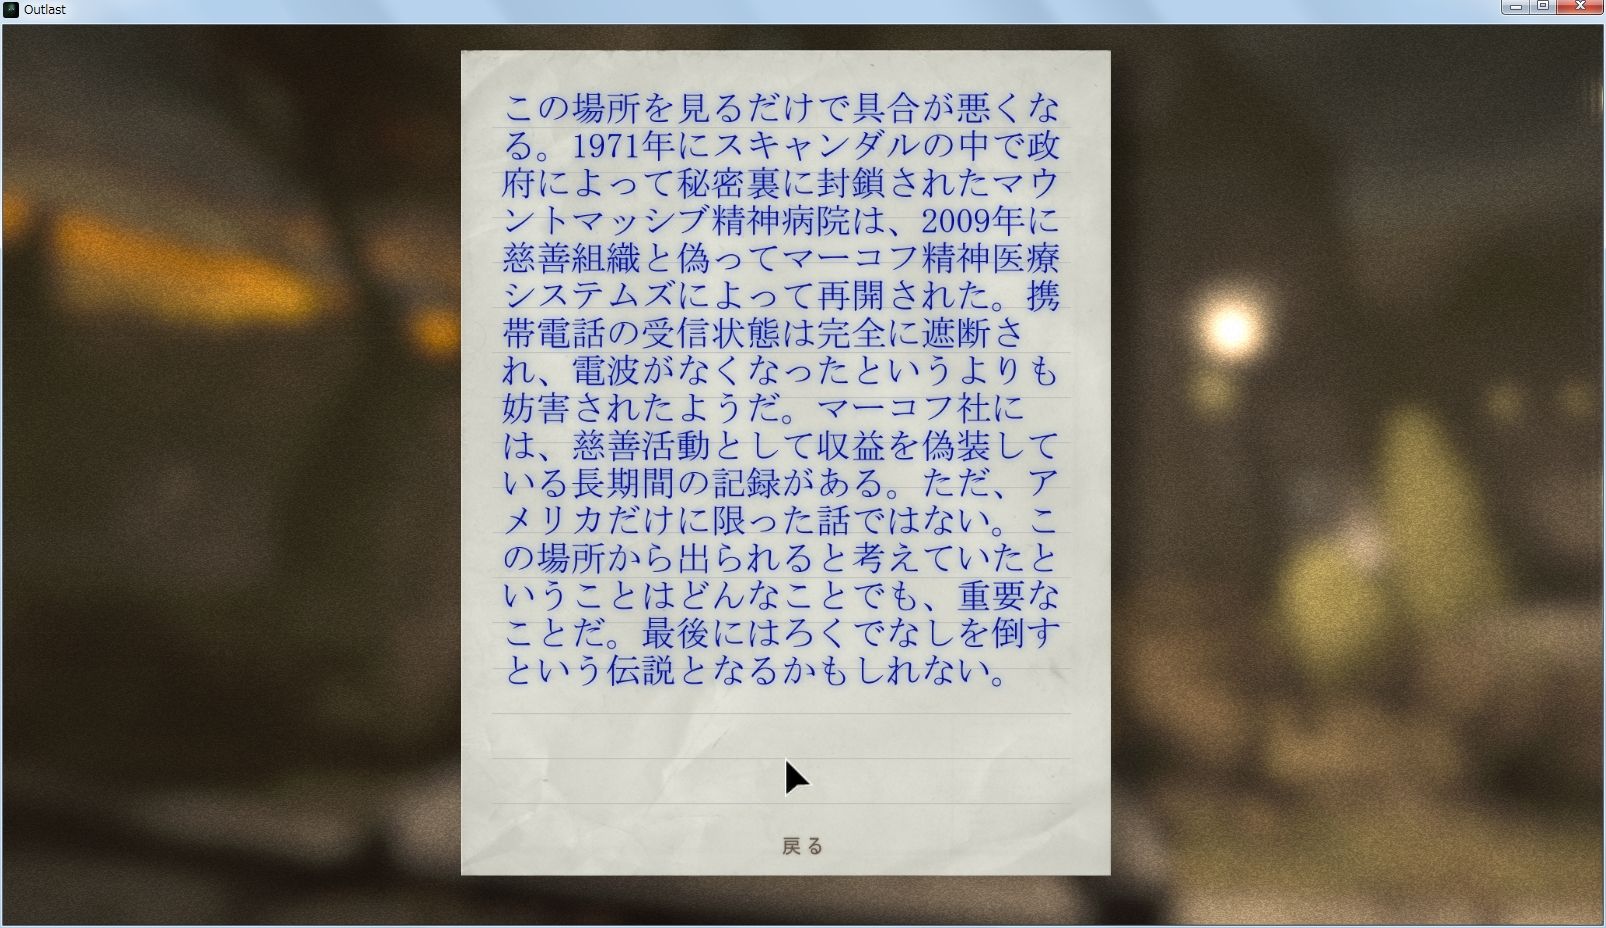 公式日本語化された Pc 版 Outlast を非公式日本語訳に変更したときのメモ Awgs Foundry